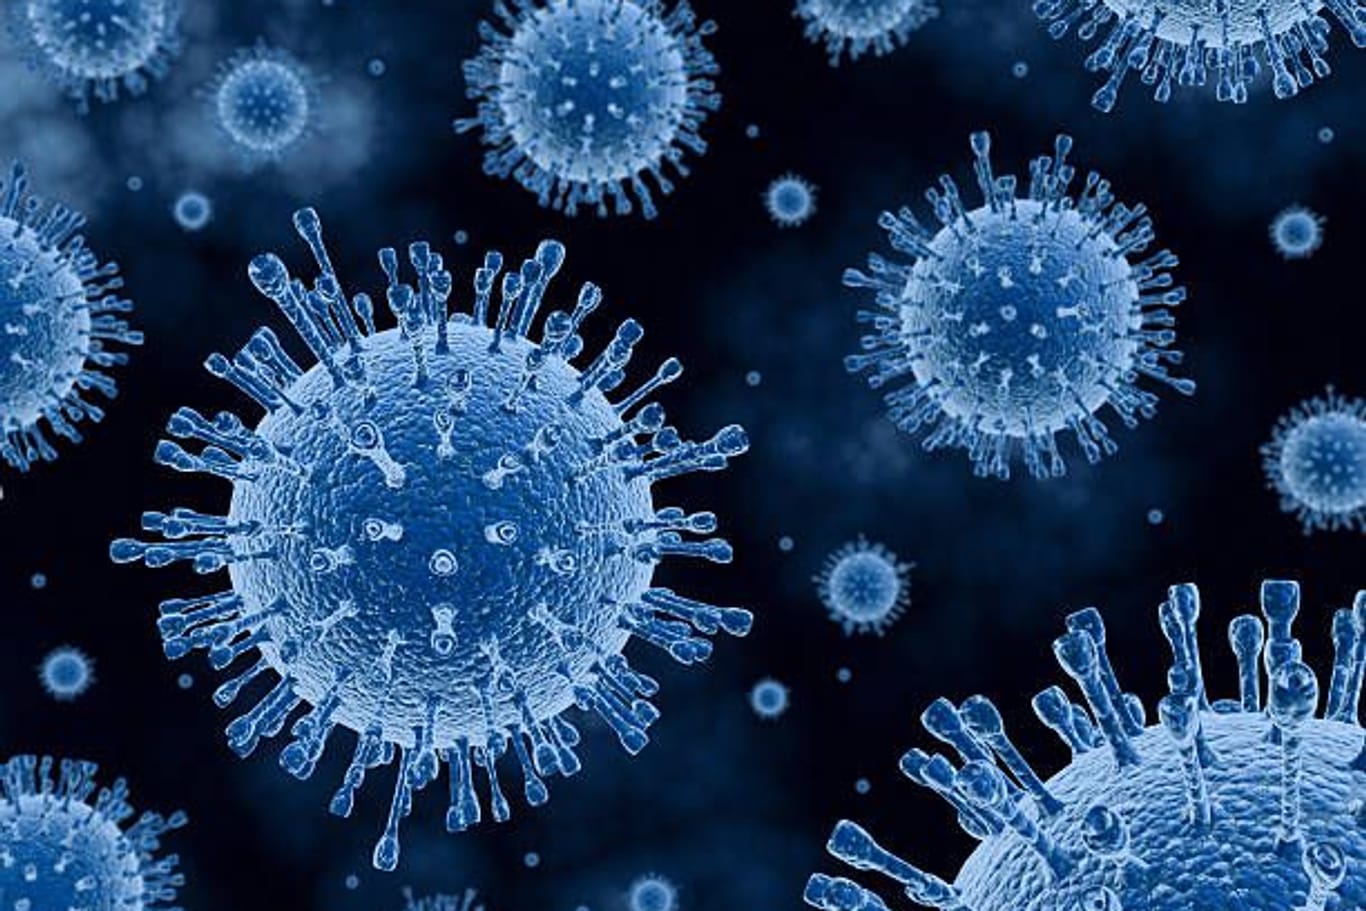 Viren (Symbolbild): Der Erreger H1N1 nistet sich in den Atemwegen ein.